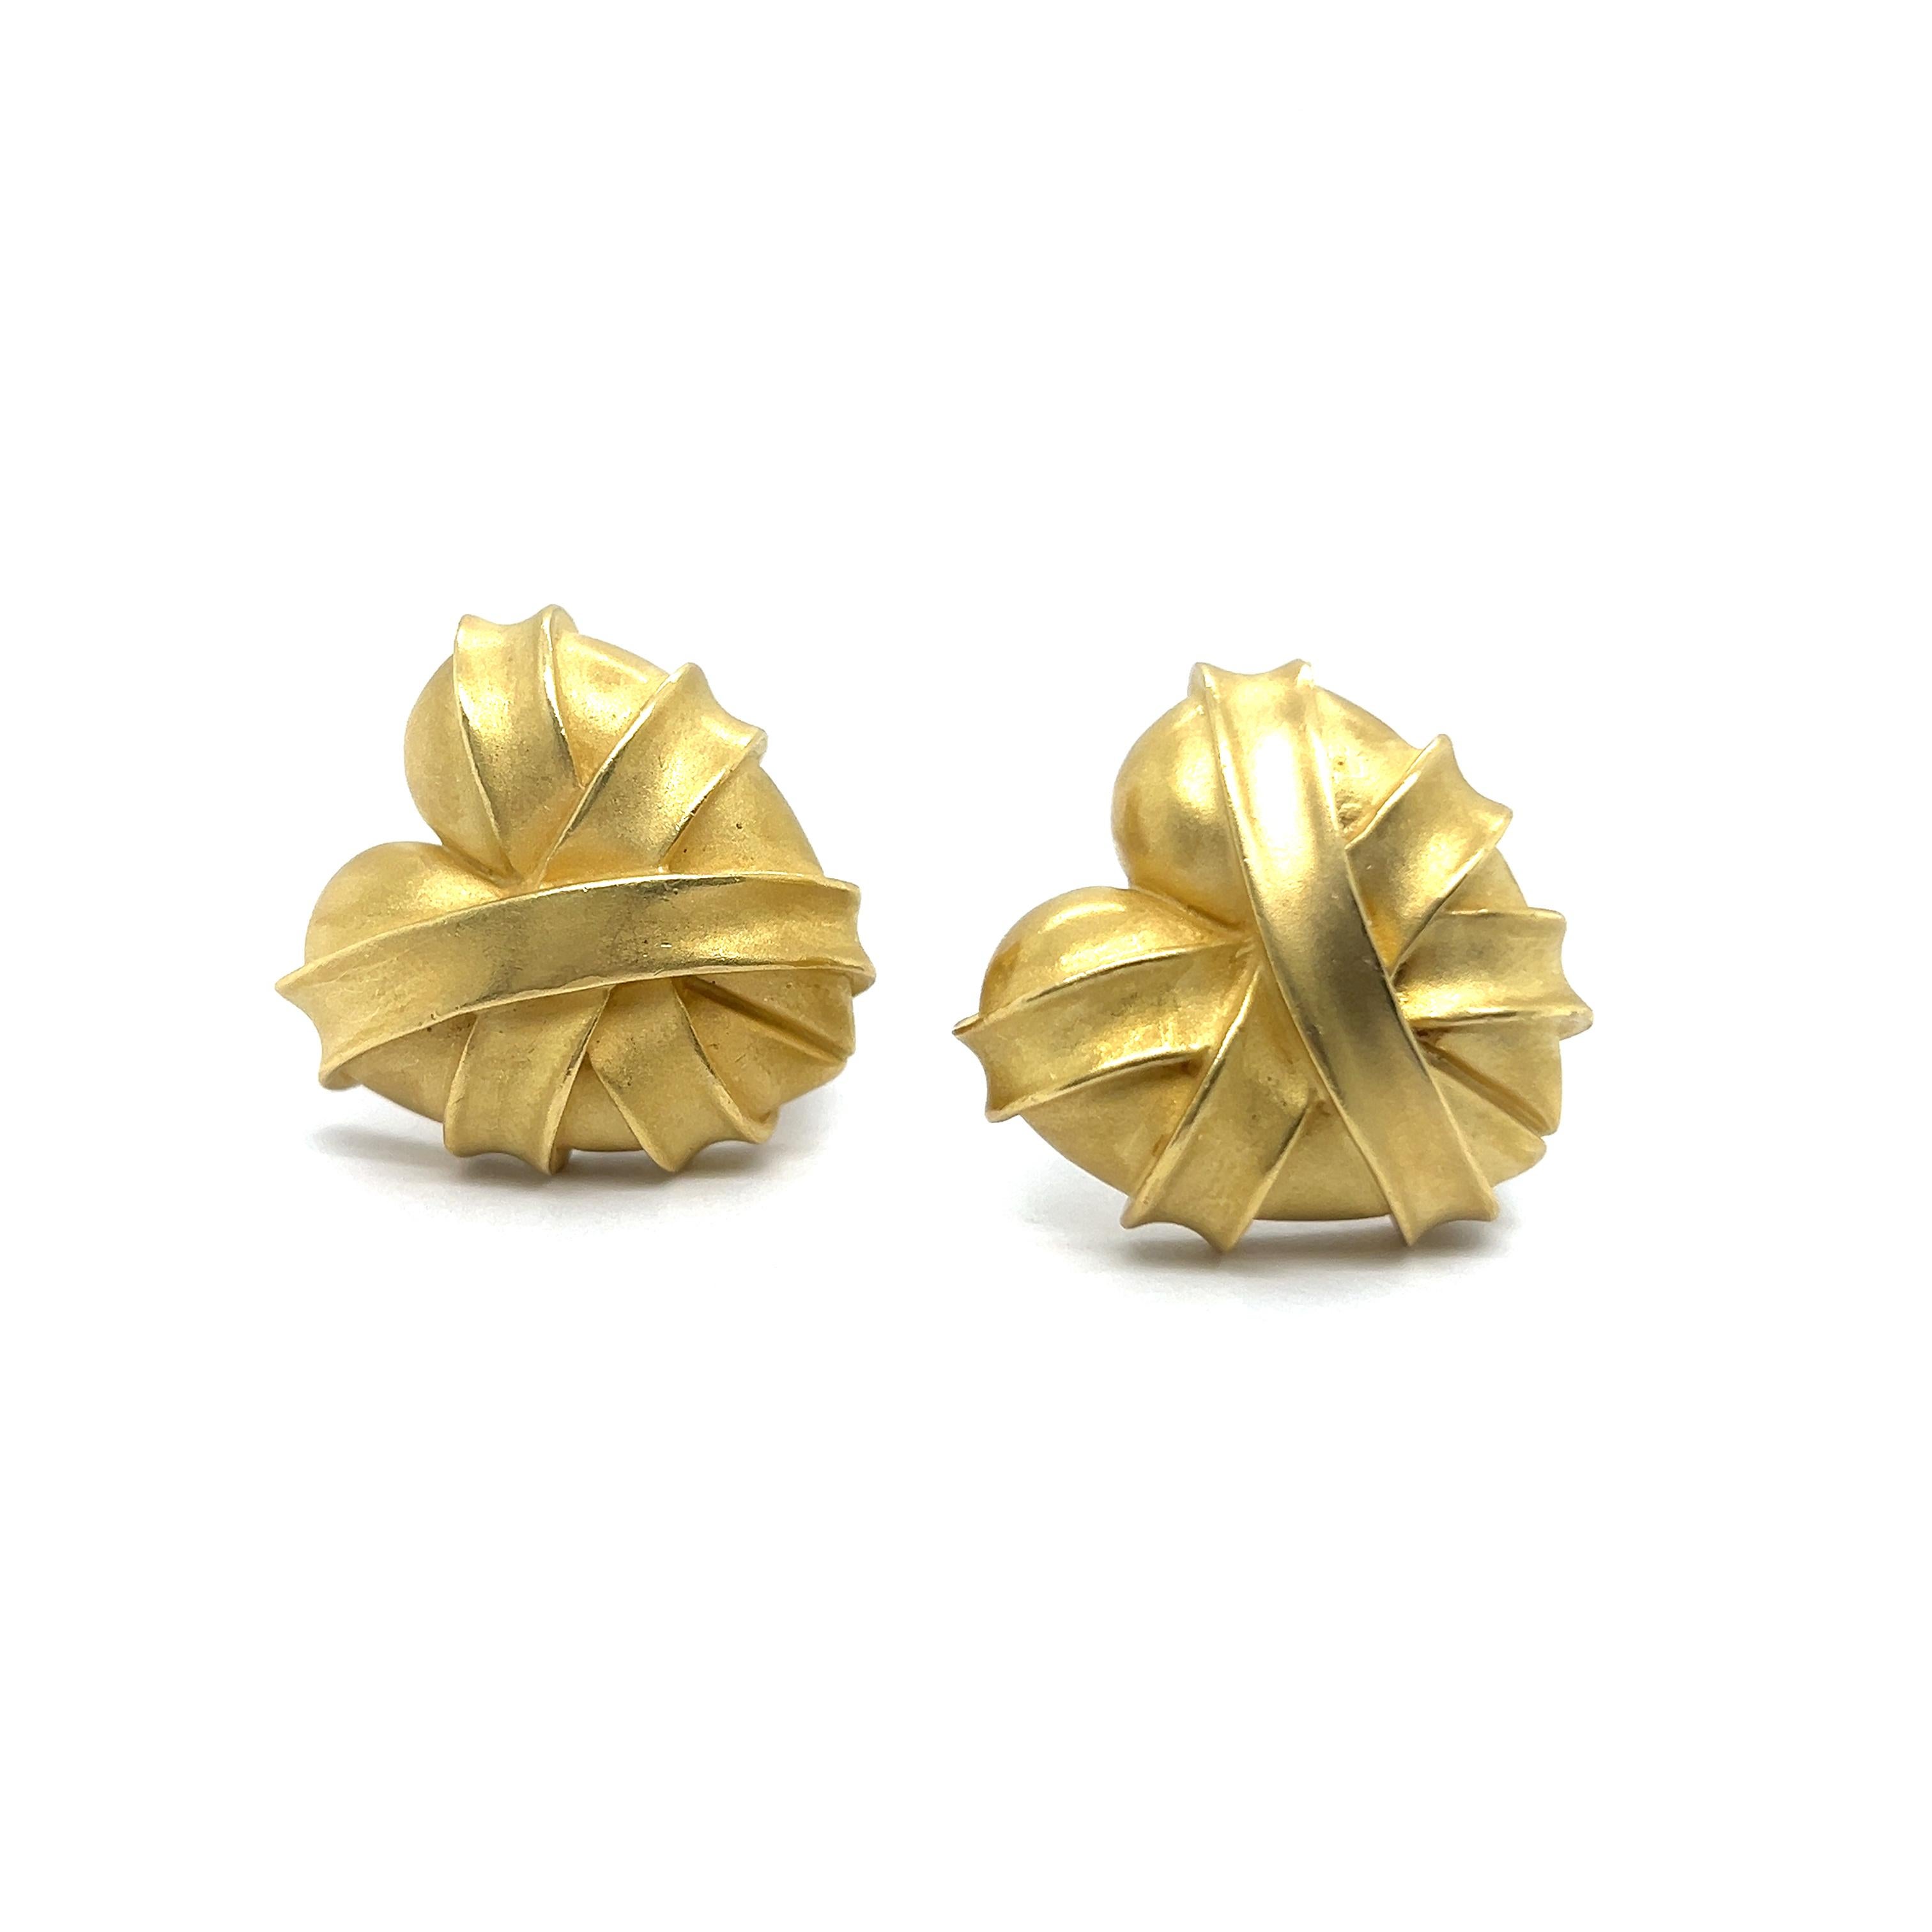 Heart-shaped Earrings in 18 Karat Yellow Gold by Kieselstein-Cord For Sale 11